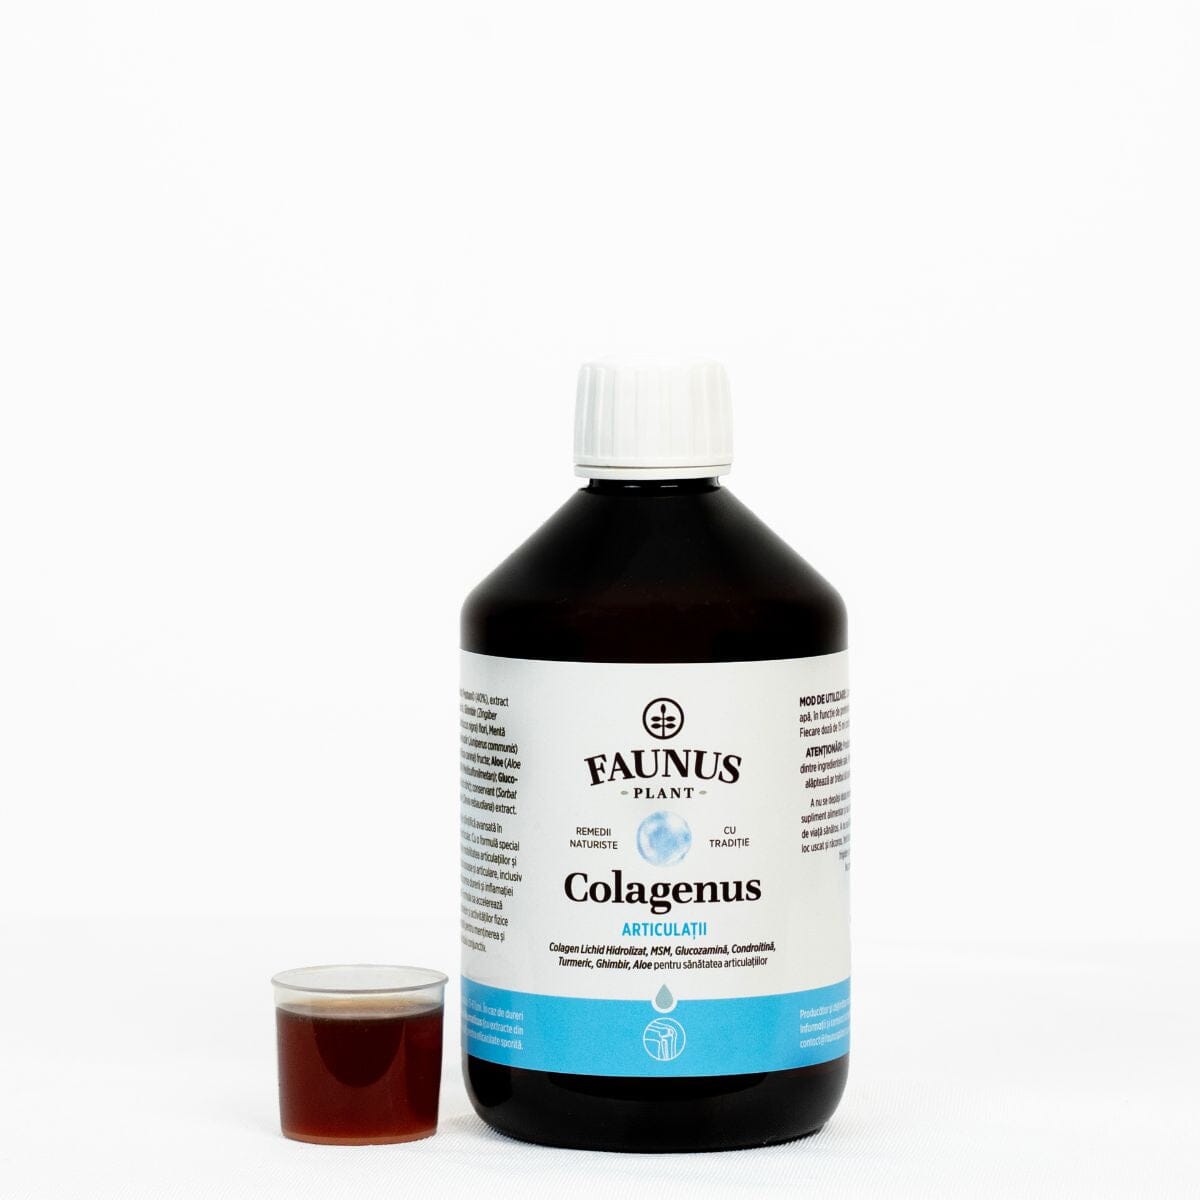 Colagenus Articulații - Soluție lichidă cu concentrație mare de colagen pentru sănătatea articulațiilor, reducerea durerii reumatice și refacerea mușchilor și ligamentelor - sticlă 500ml Cosmetics Faunus Plant 